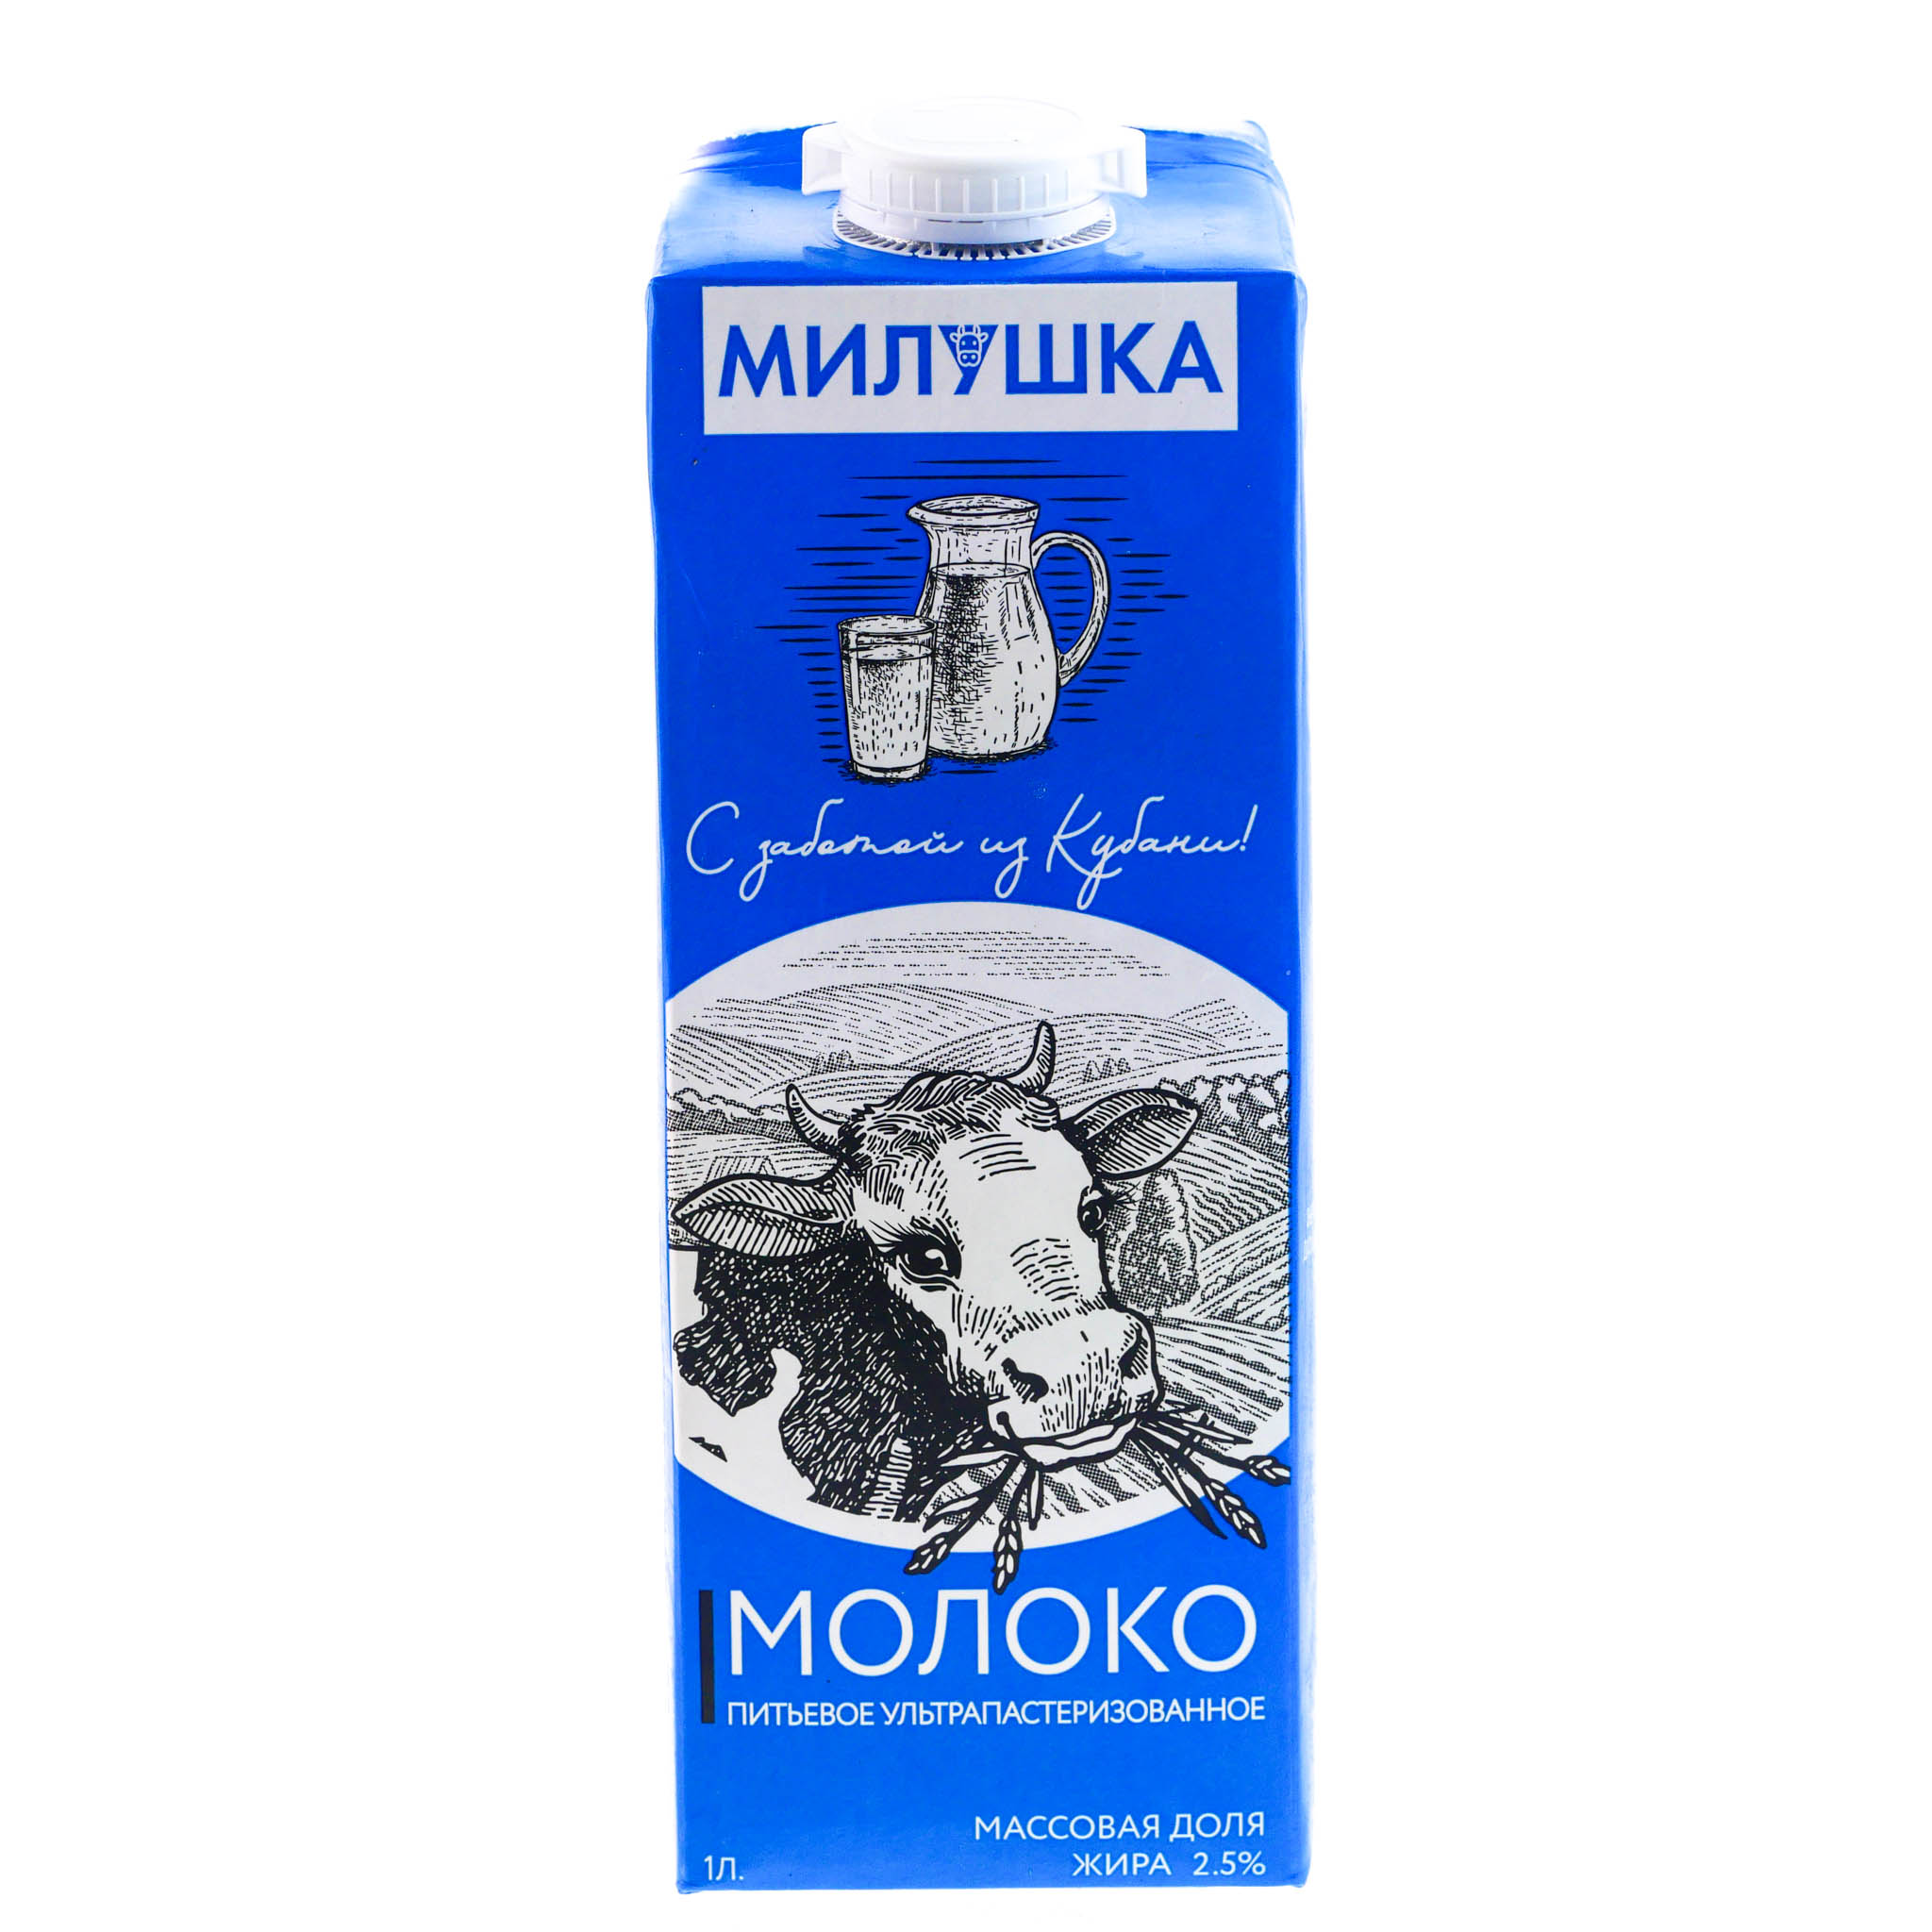 Купить молоко 1 л. Молоко милушка ультрапаст 3,2% 1л. Молоко милушка 2.5 ультрапастеризованное 1л БЗМЖ. Молоко 3,2% ультрапастеризованное 1 л милушка БЗМЖ. Молоко милушка тетрапак.